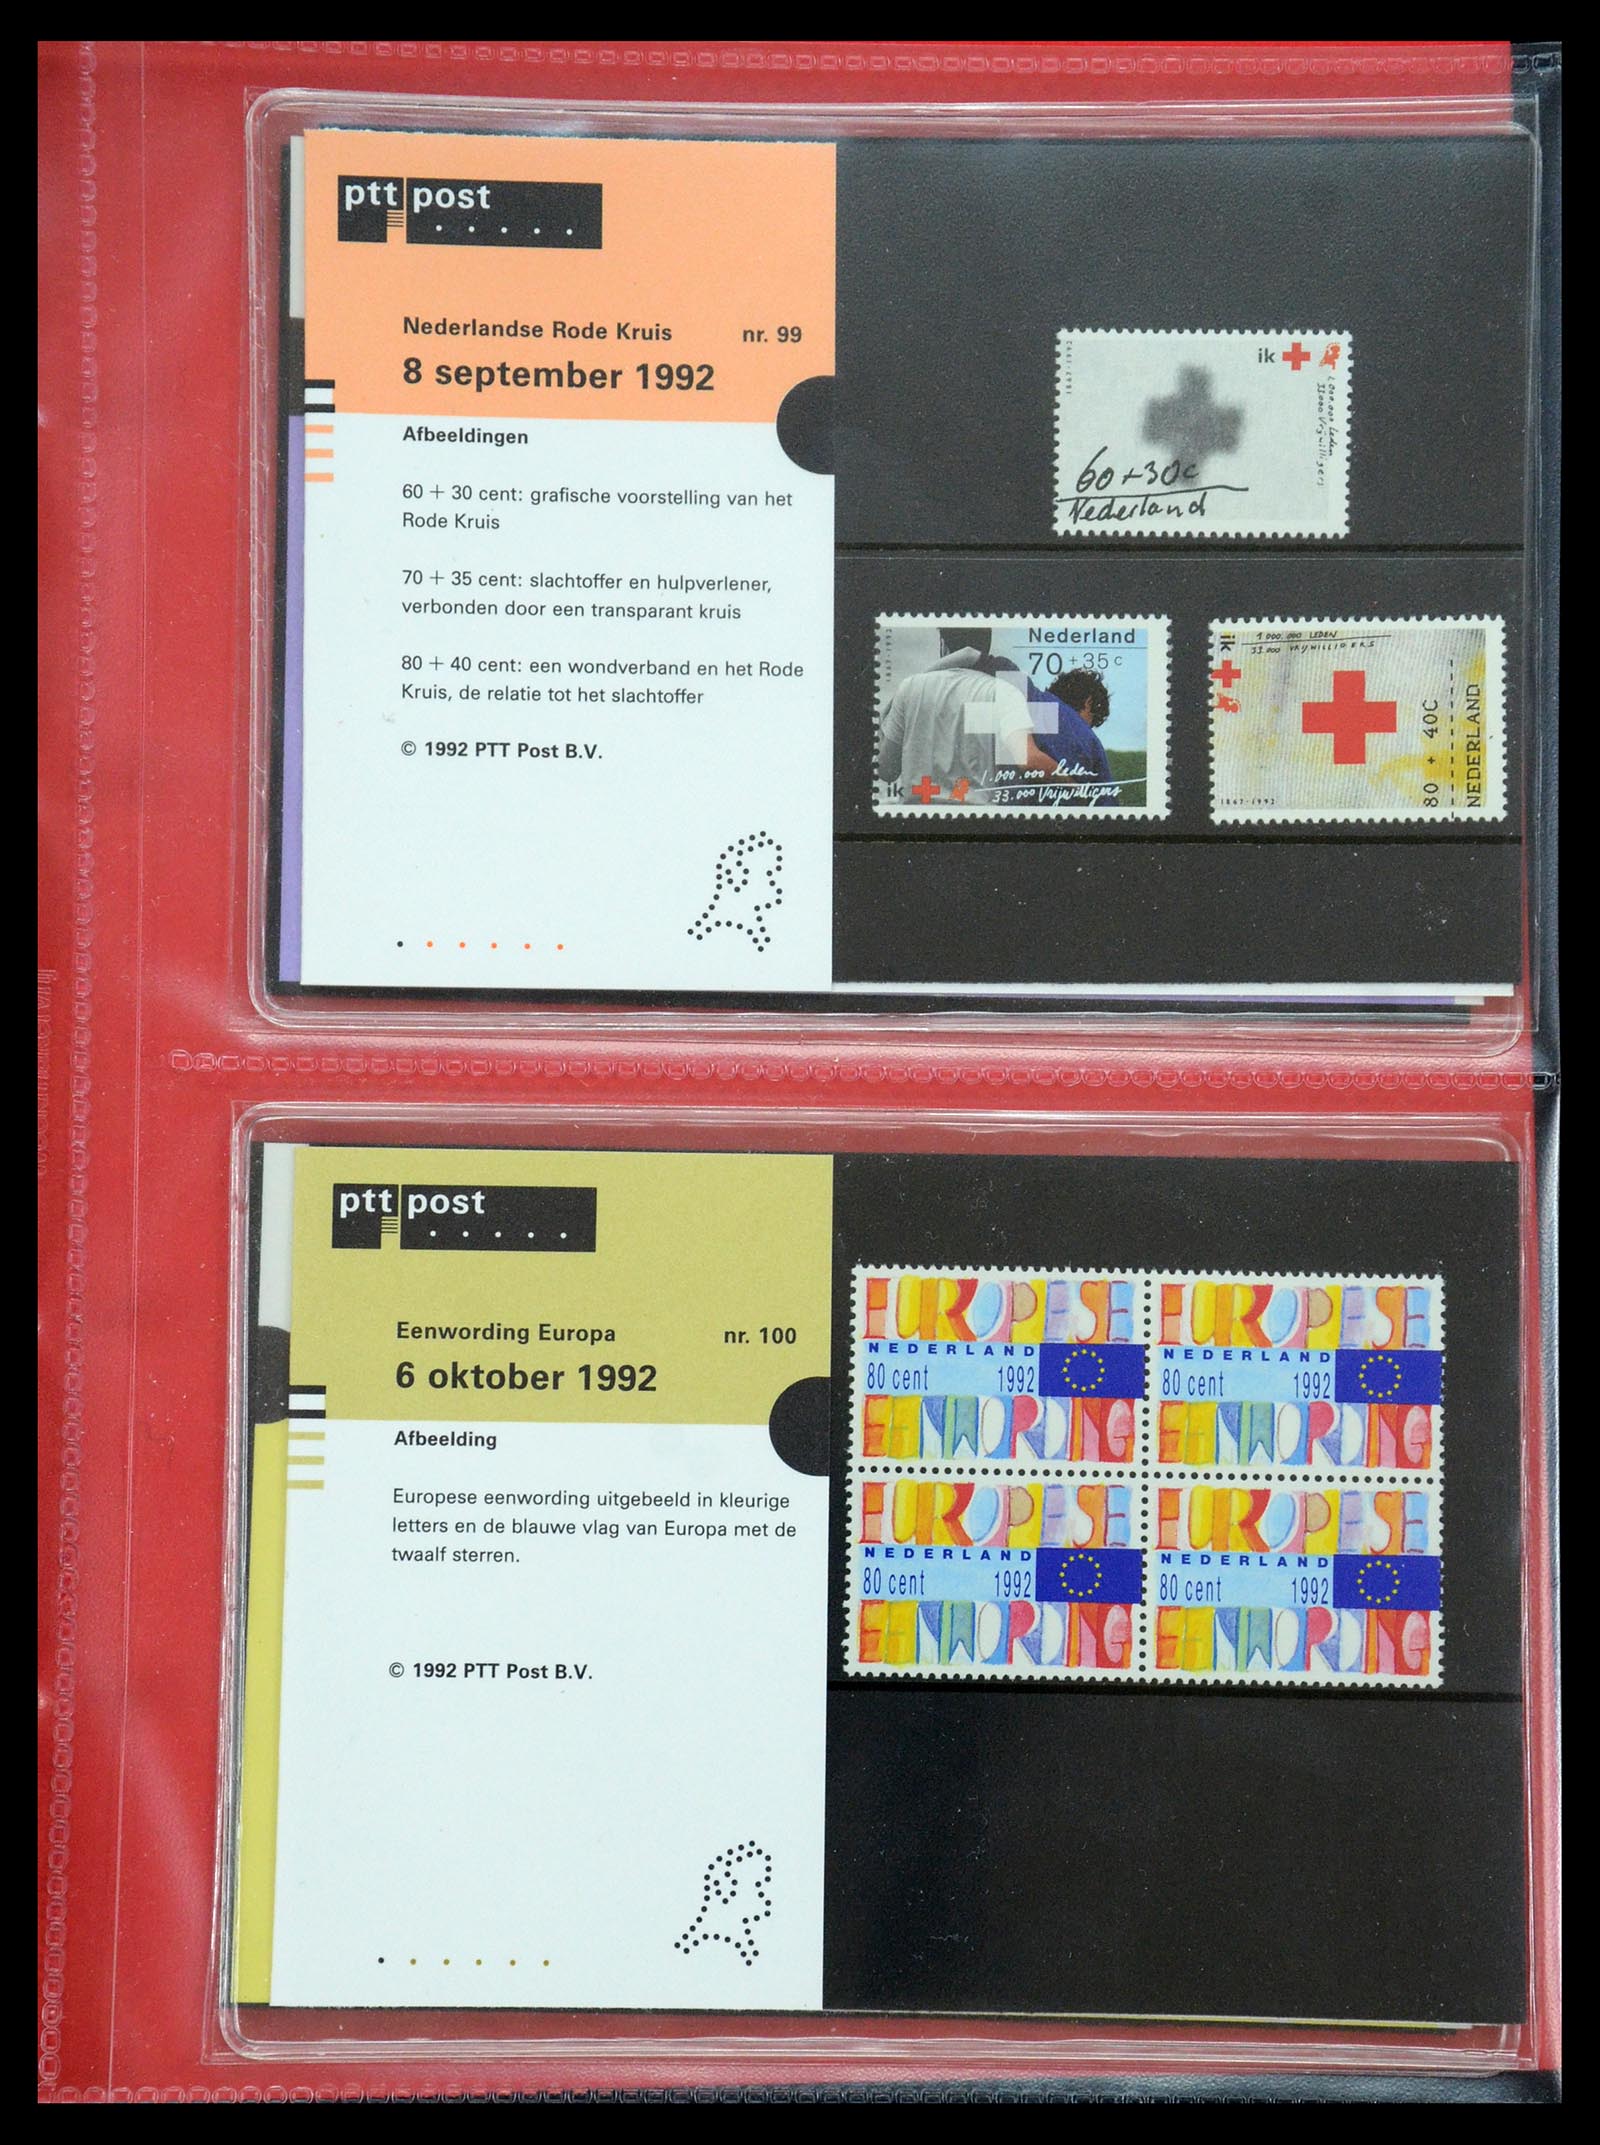 35692 051 - Stamp Collection 35692 Netherlands presentation packs 1982-2021!!